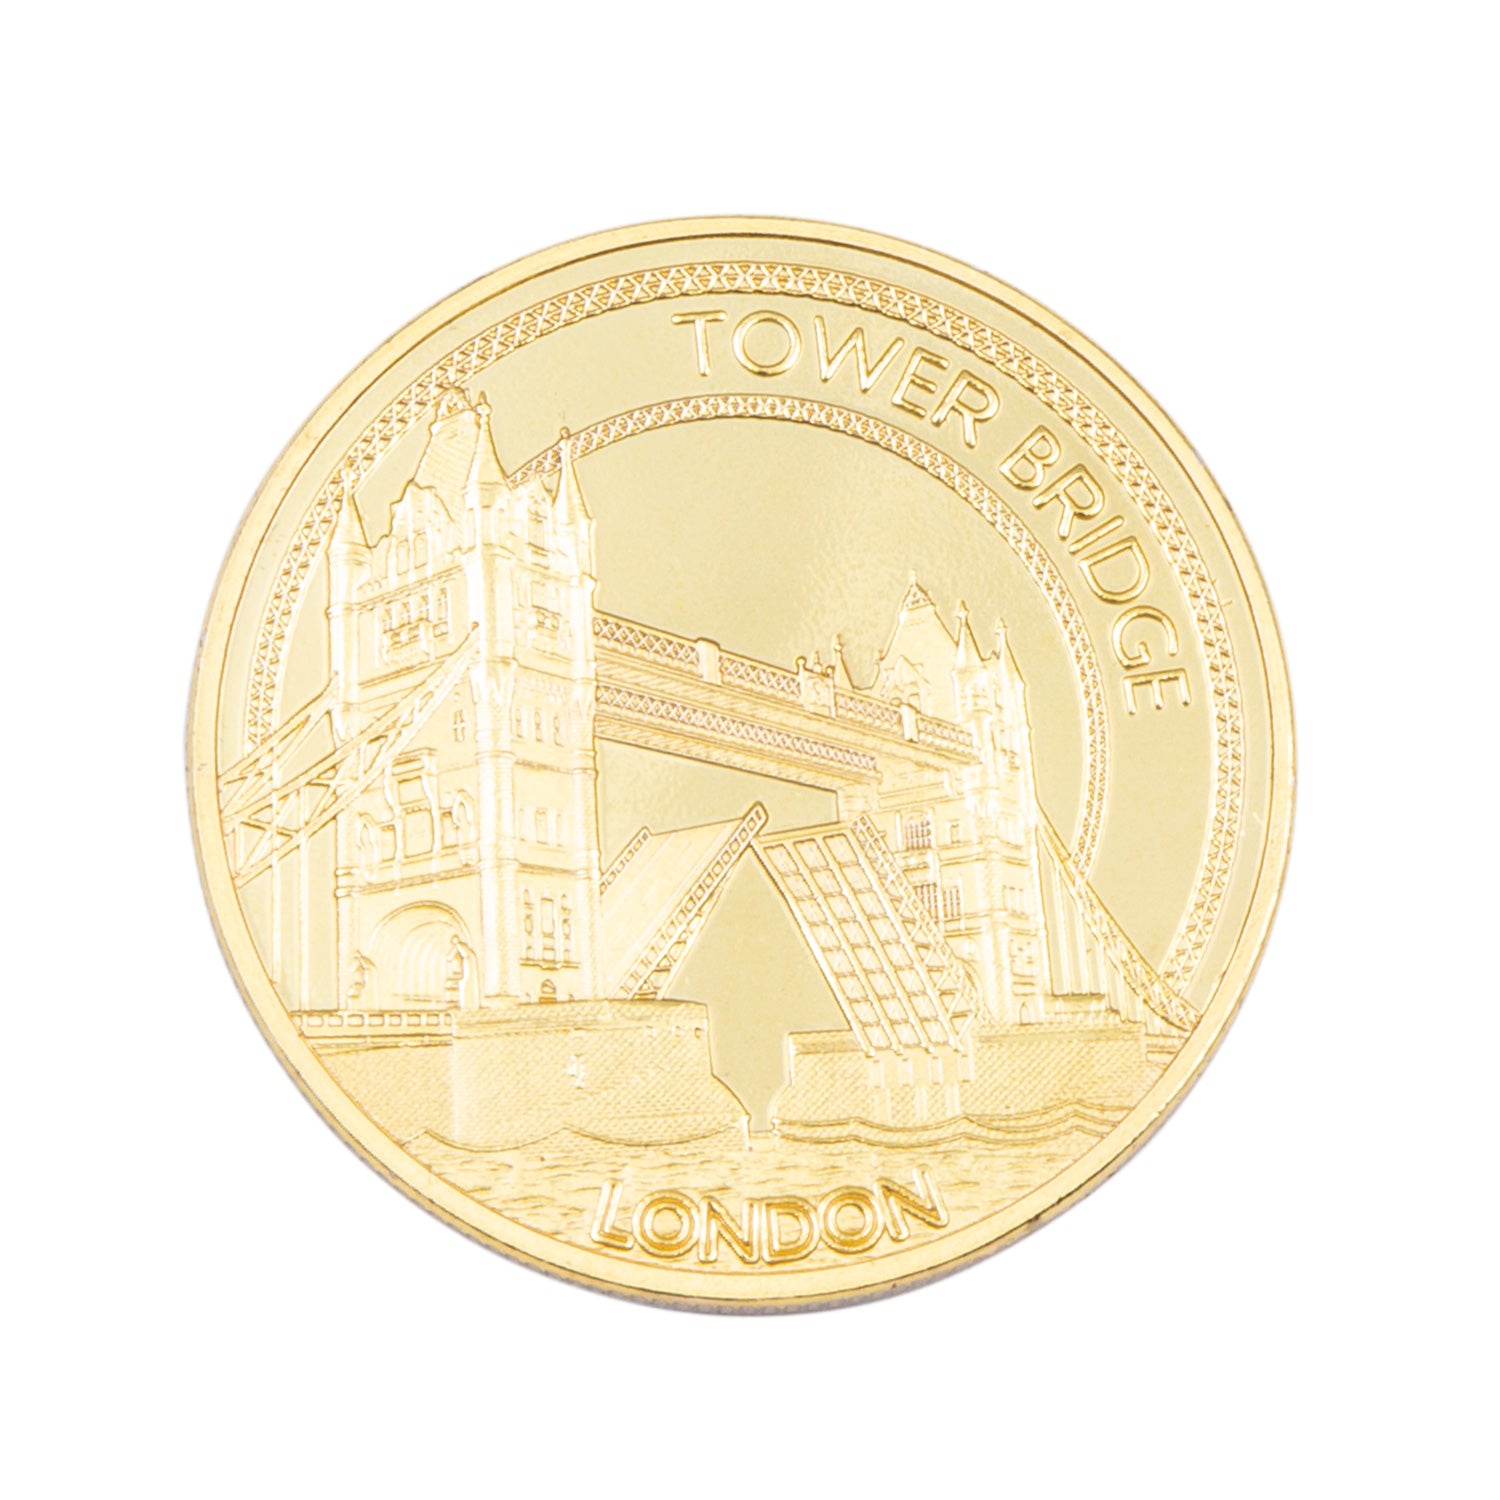 Tower Bridge Gold Medal Coin Fridge Magnet 1